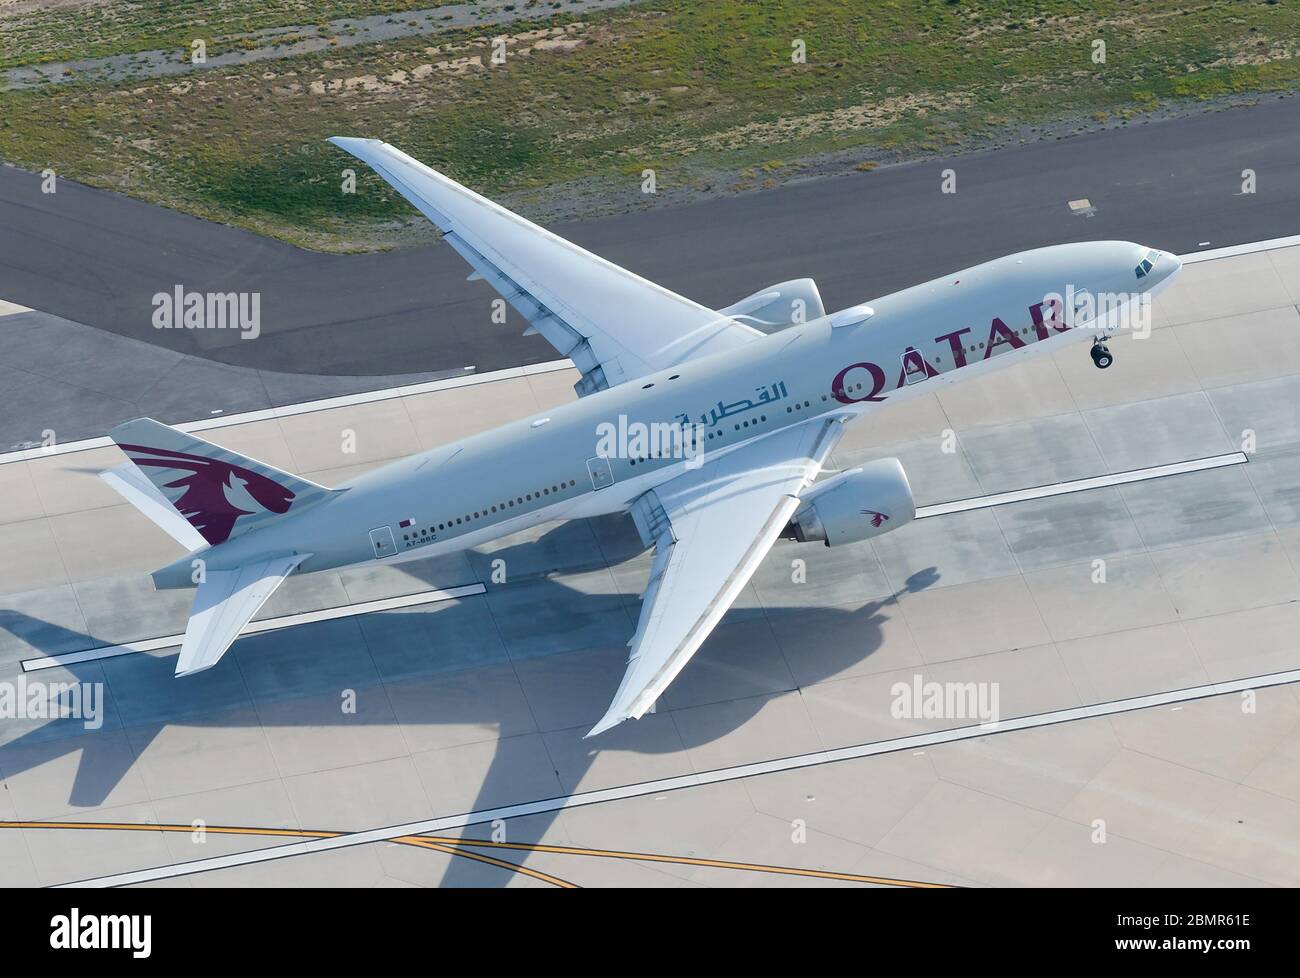 Qatar Airways Boeing 777 in partenza dalla pista dell'aeroporto internazionale di LAX. Vista aerea del jet B777 che decollo da un'angolazione elevata a Doha, Qatar. Foto Stock